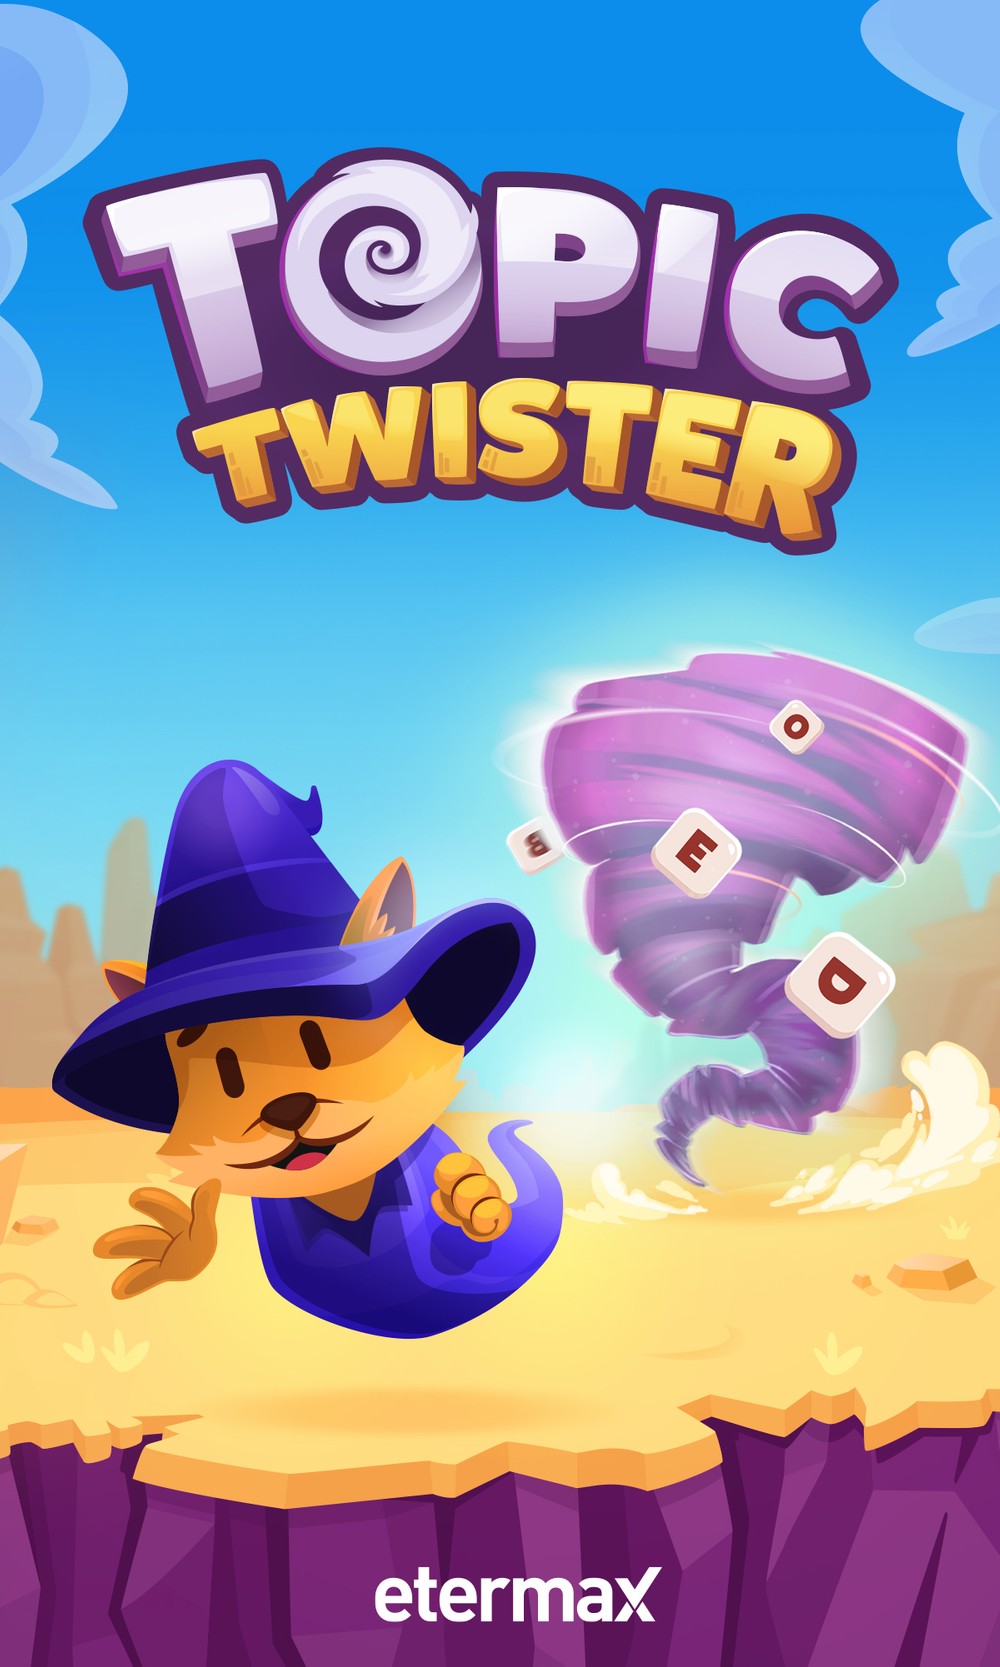 Topic Twister ou um “stop” para jogar com o smartphone em vez da